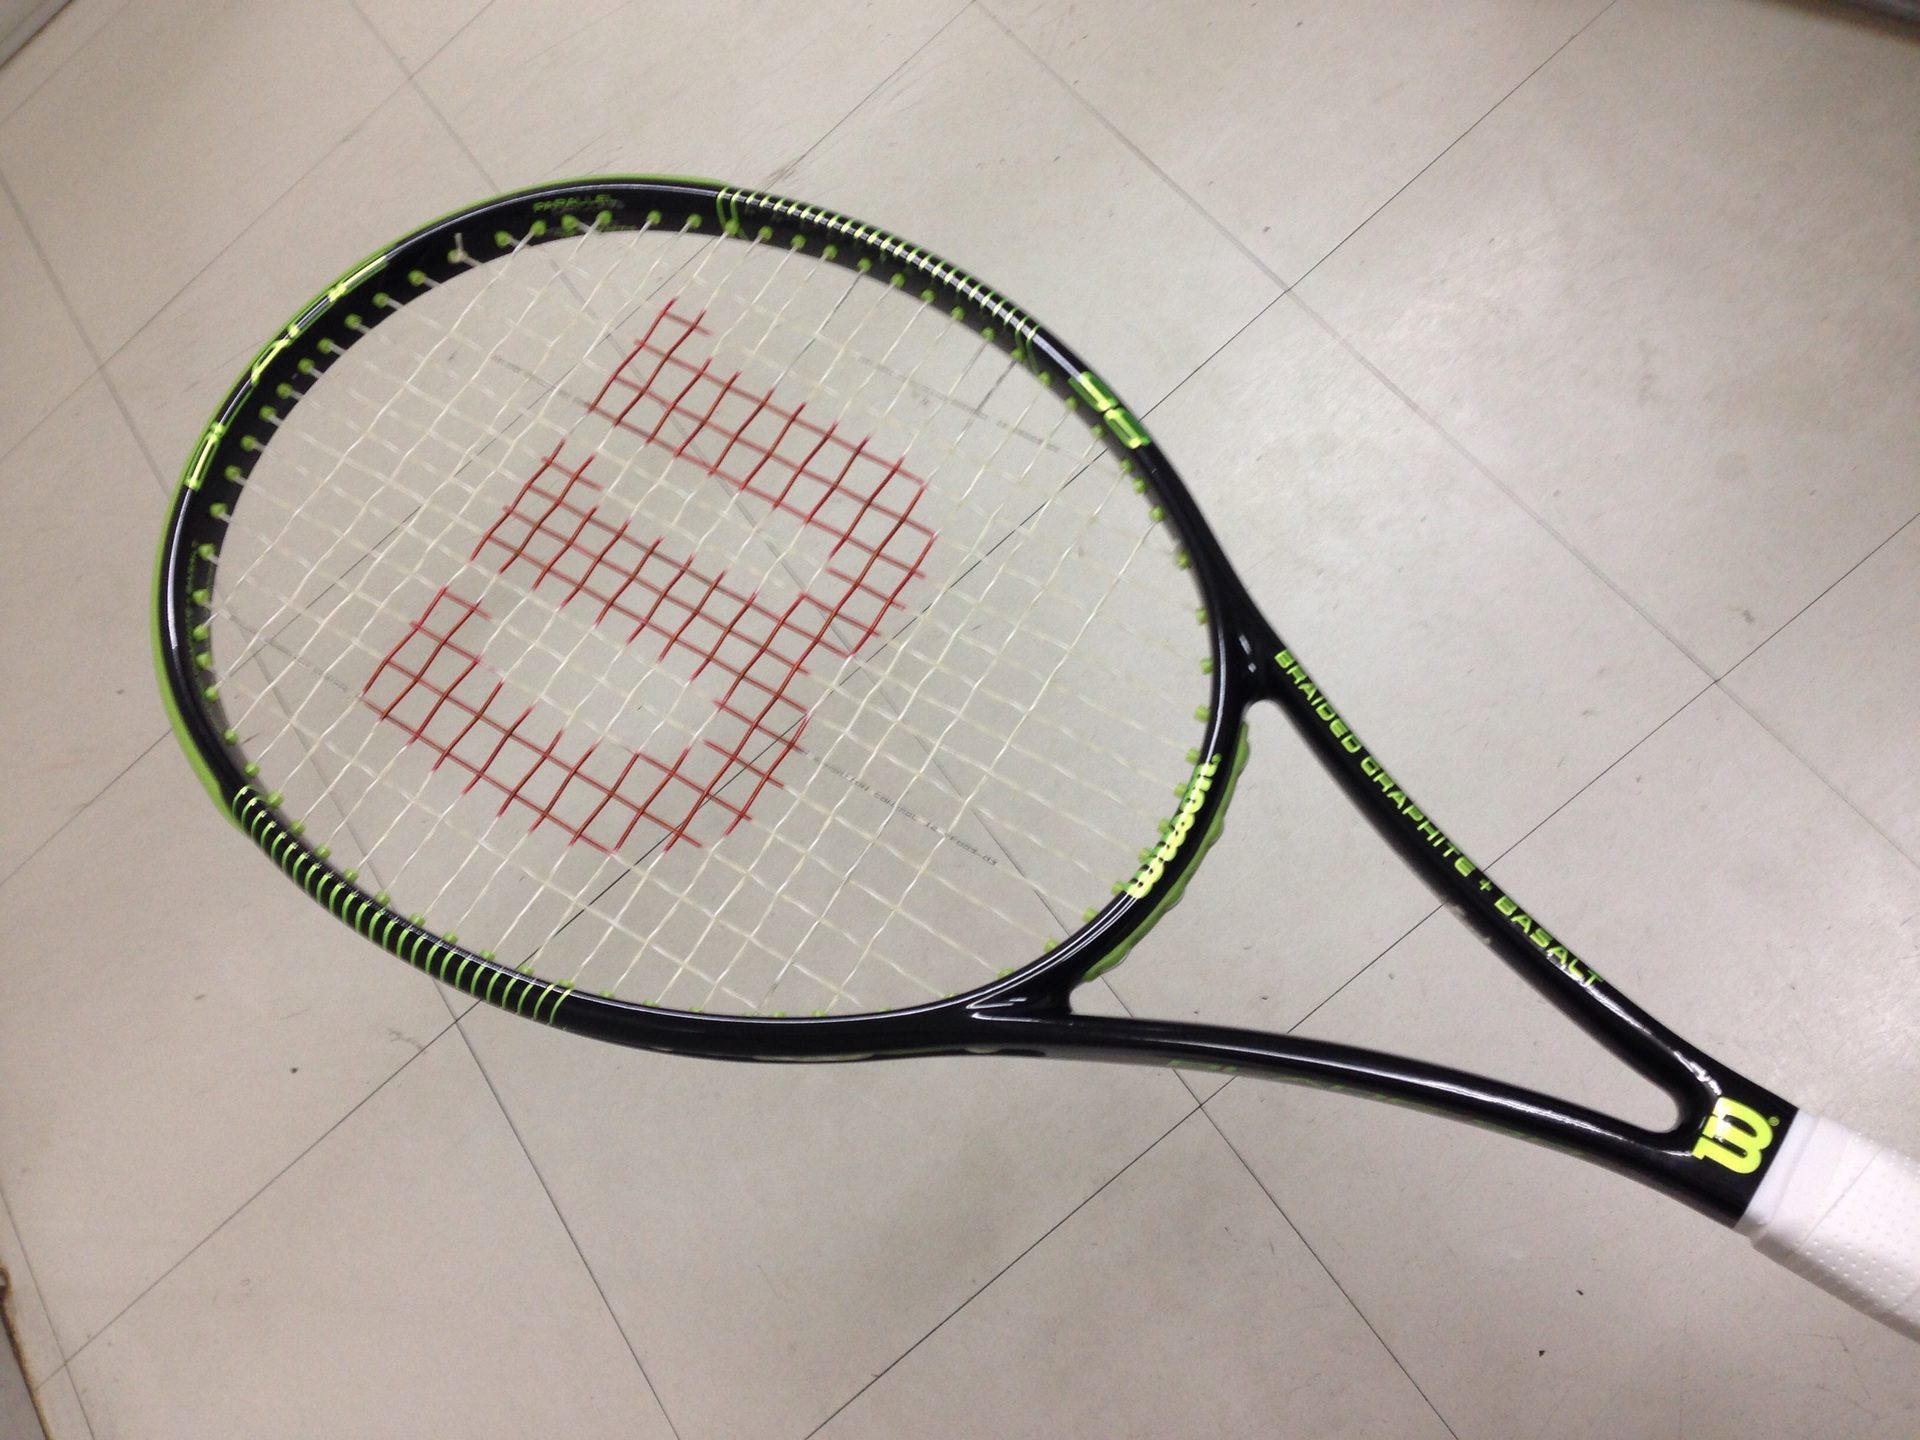 テニスラケット ウィルソン ブレード 98 16×19 2015年モデル (G2)WILSON BLADE 98 16×19 2015